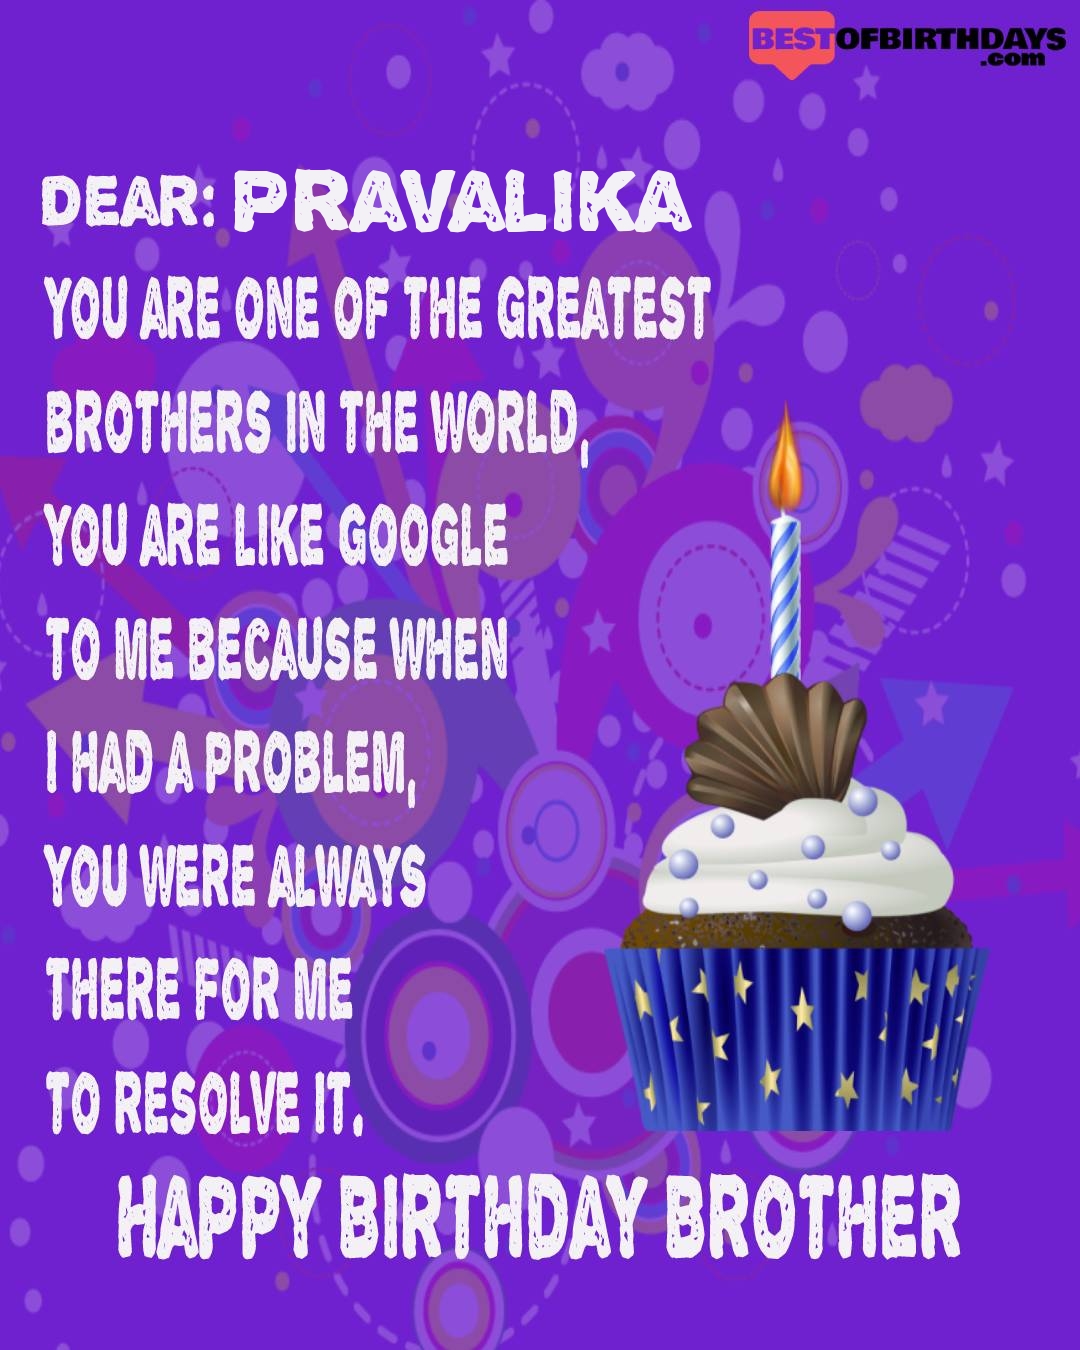 Happy birthday pravalika bhai brother bro